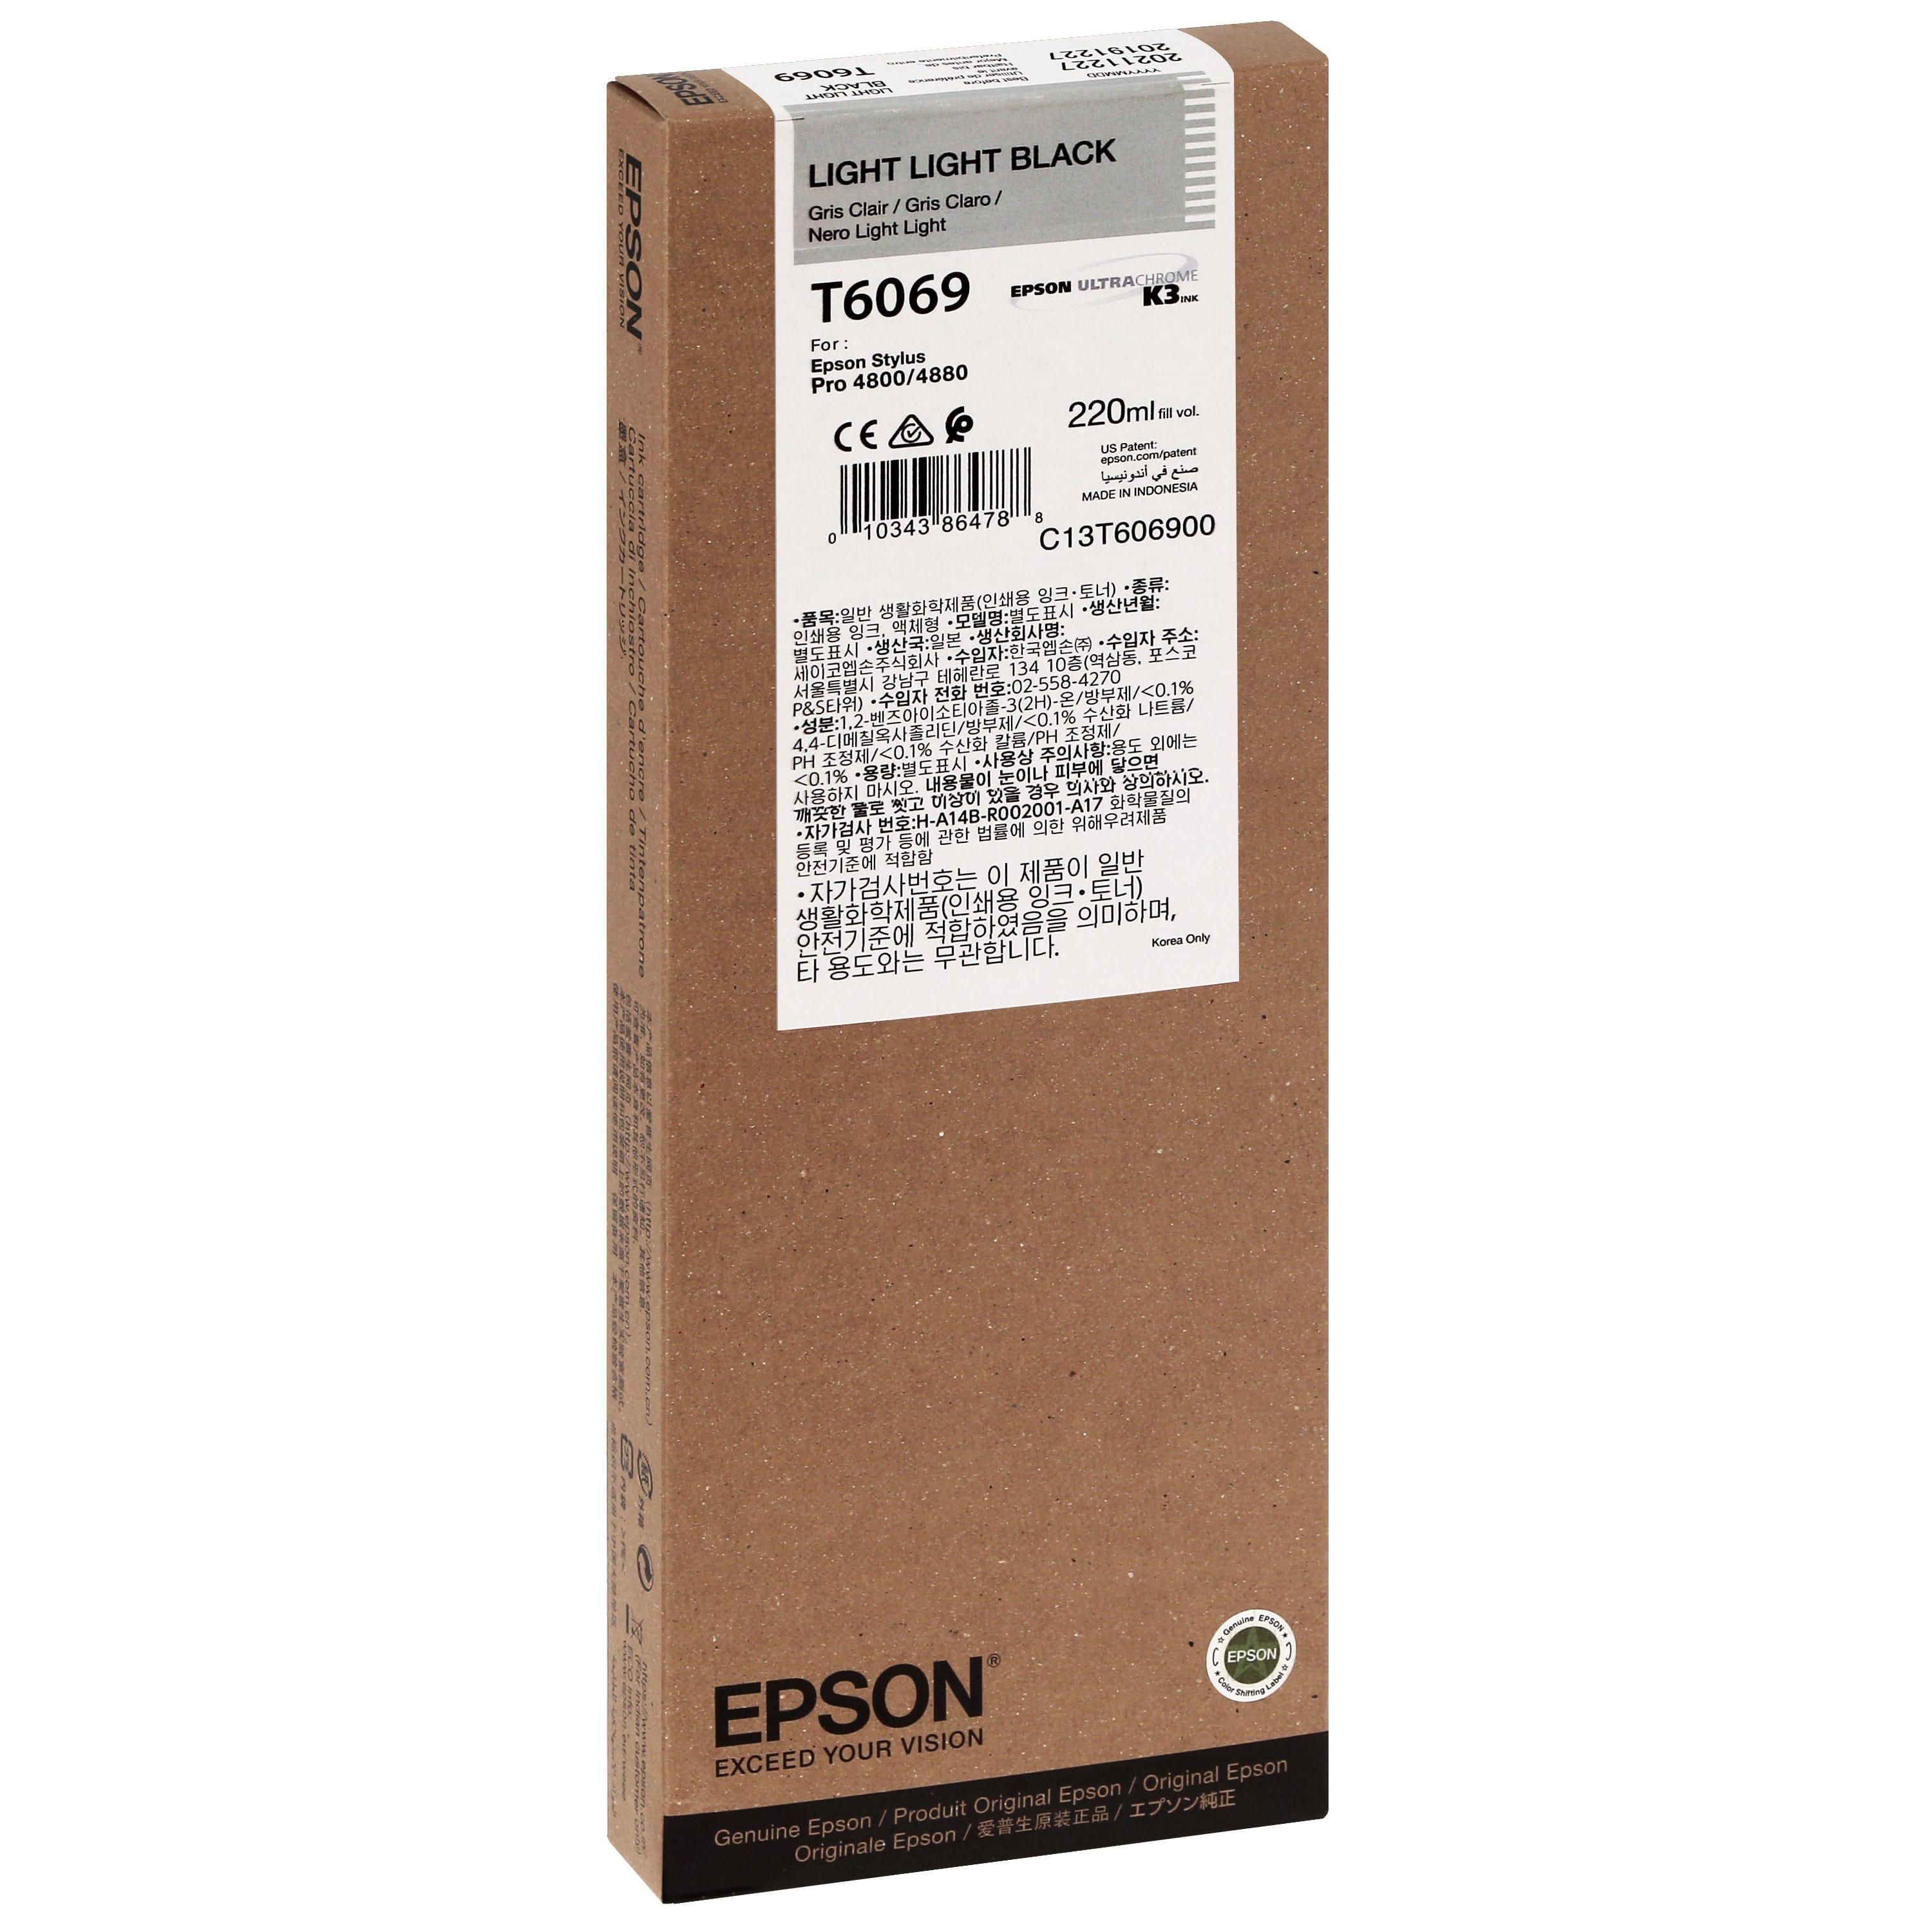 EPSON - Cartouche d'encre traceur T6069 Pour imprimante 4800/4880 Gris clair - 220ml